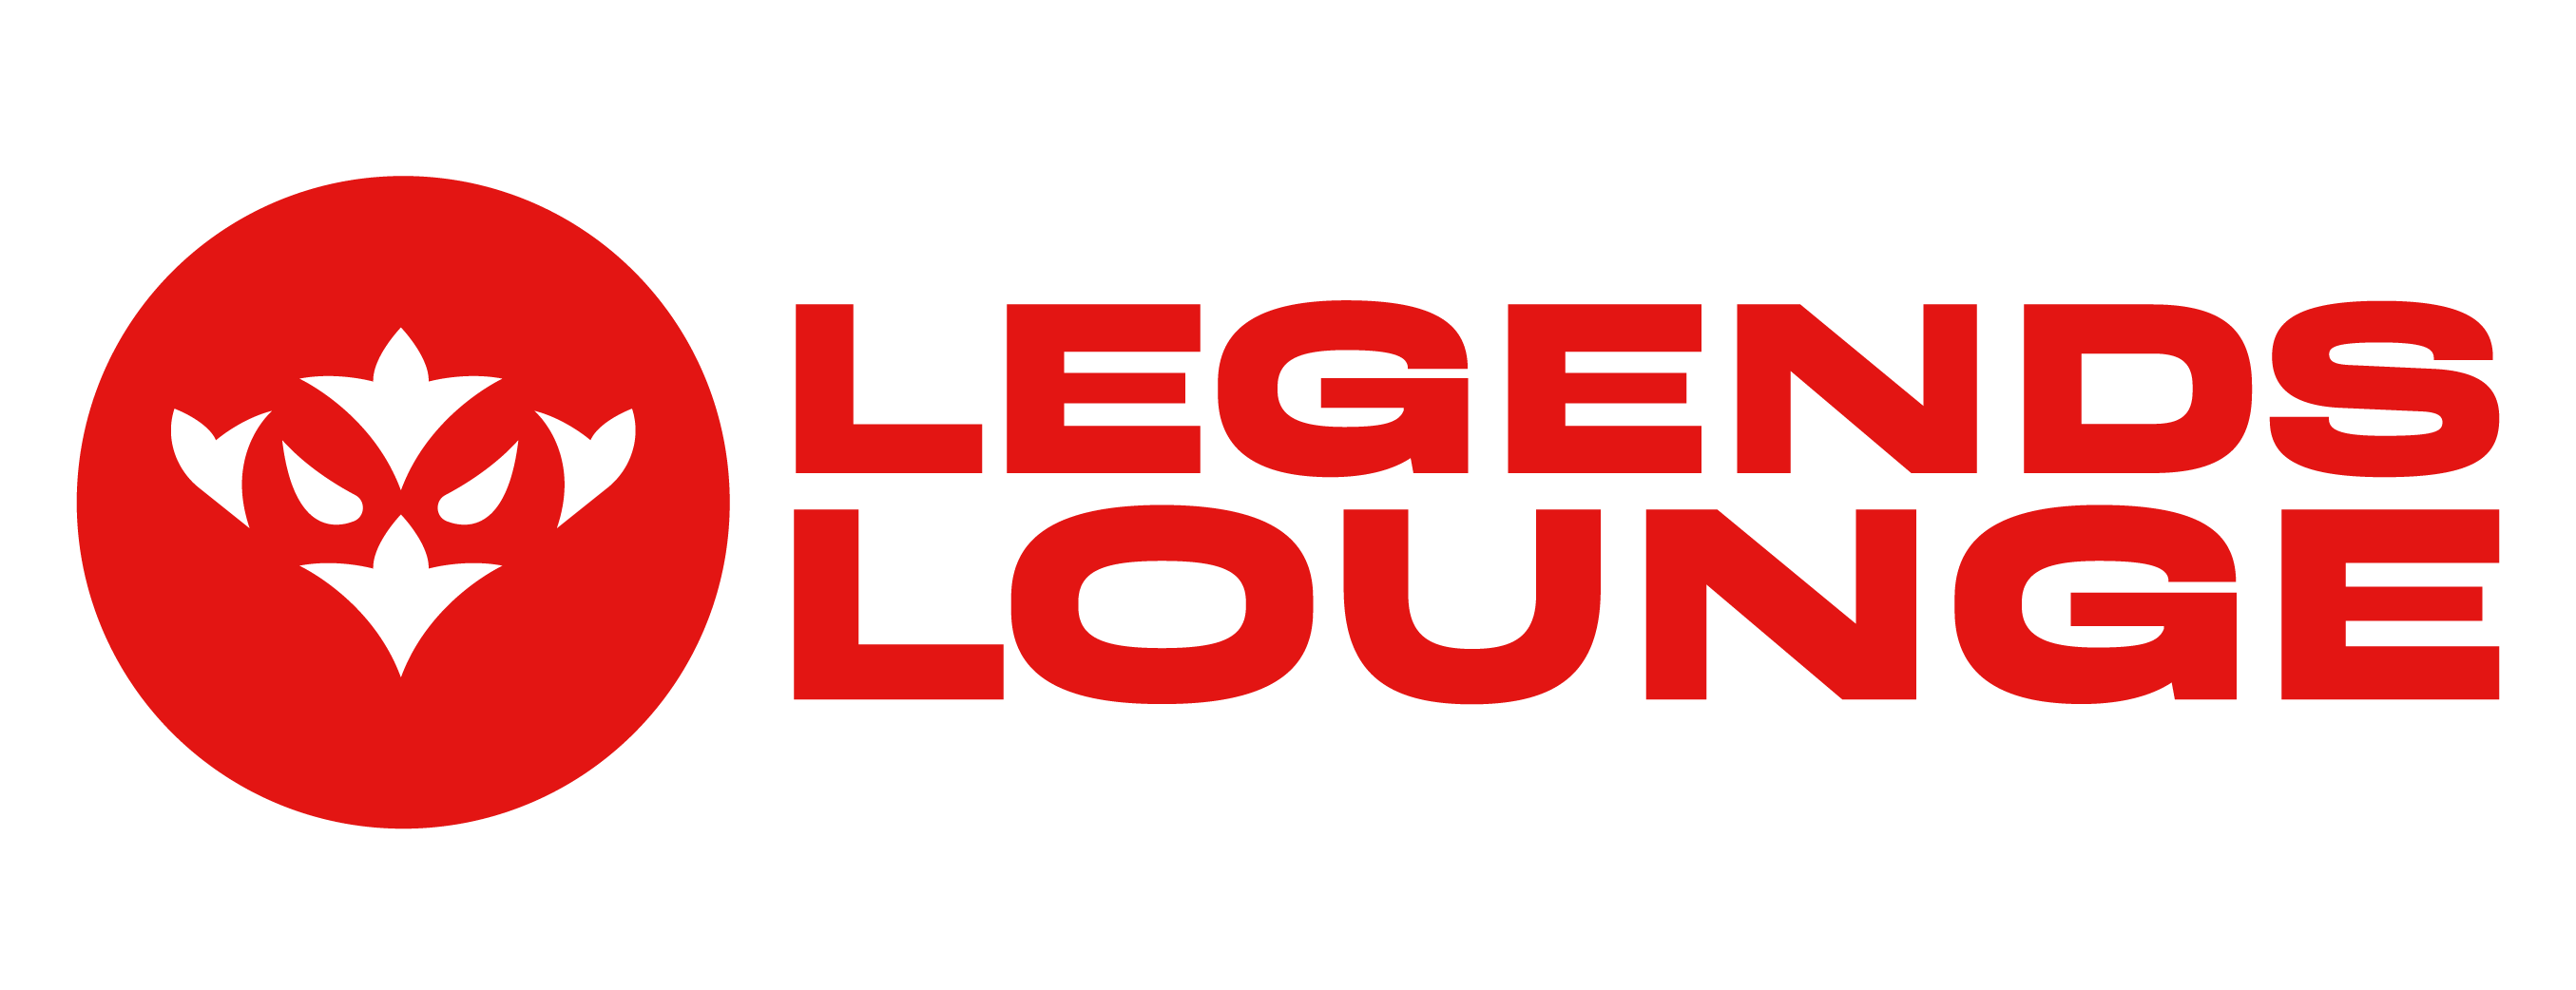 Legends Lounge banner image